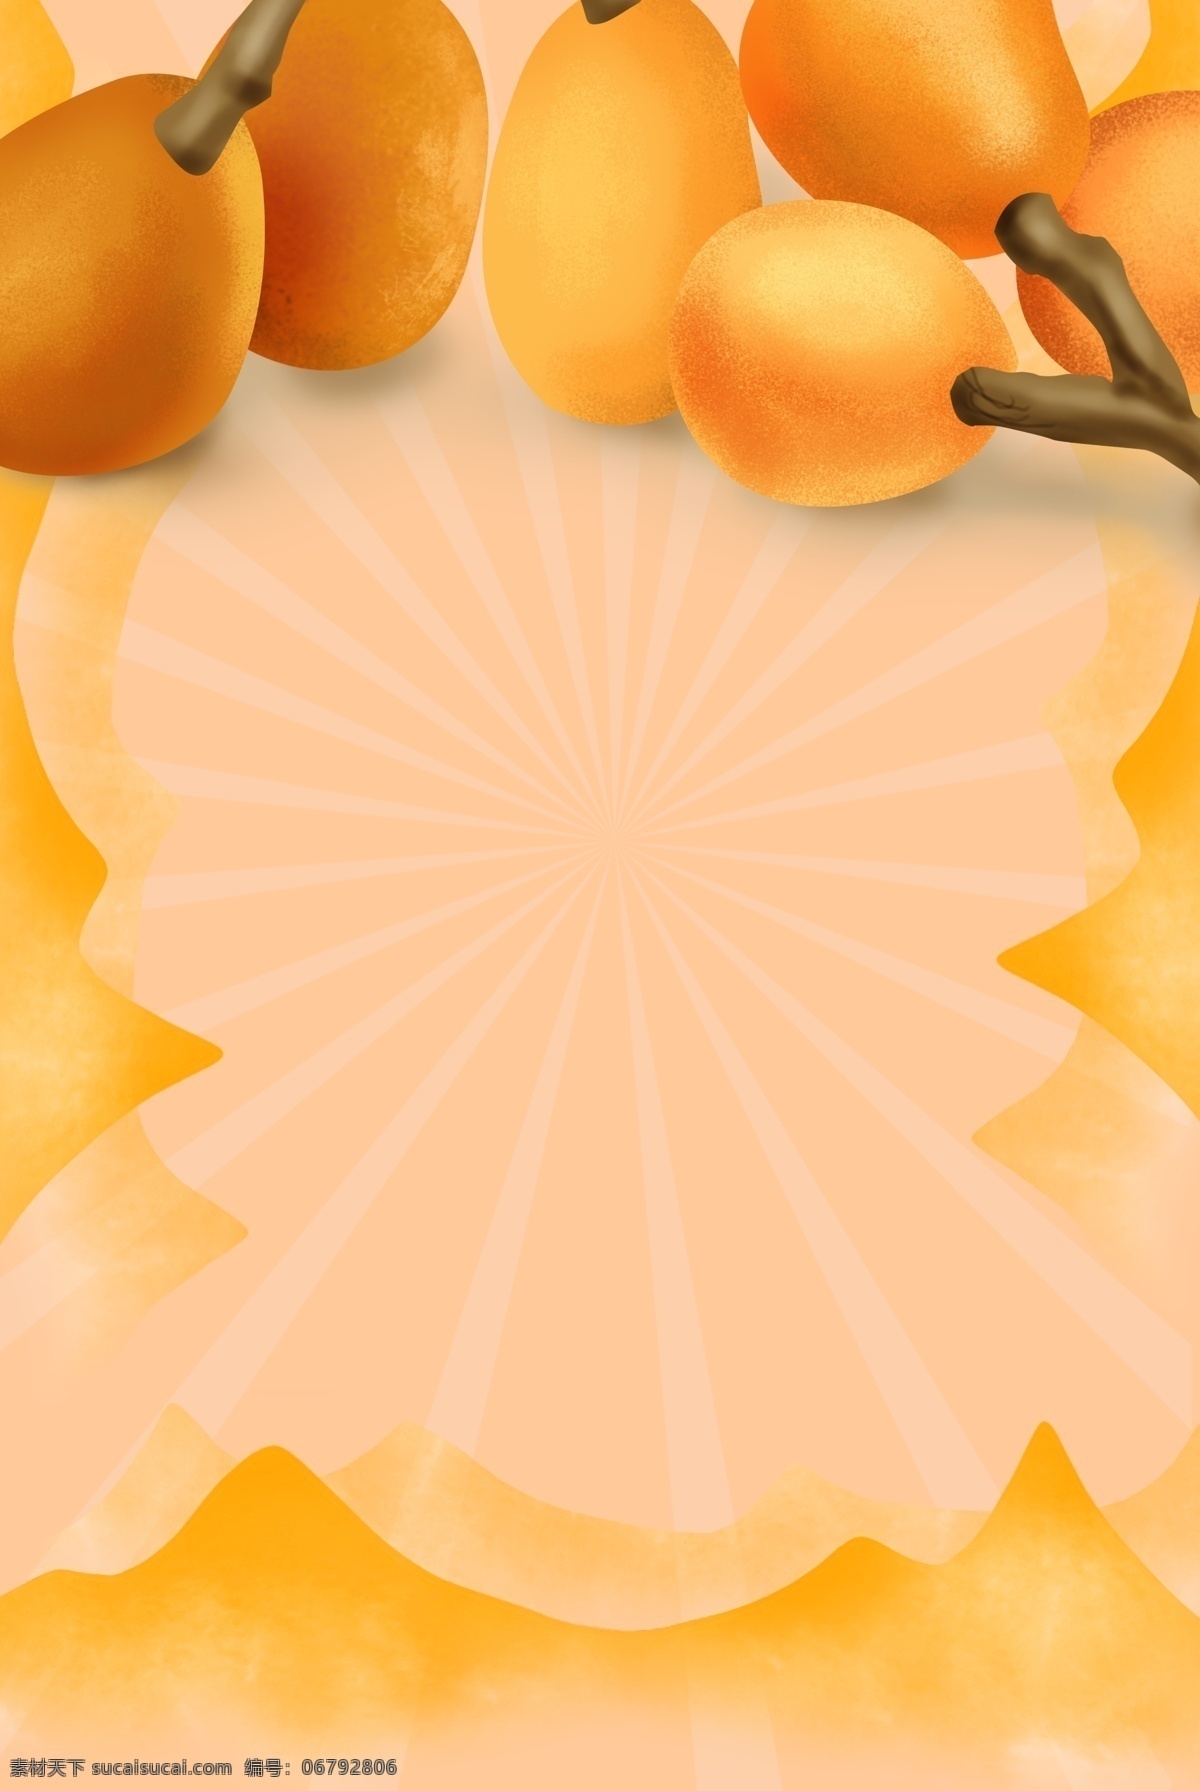 三月 水果 枇杷 海报 黄色 背景 黄色水果 枇杷水果 波纹 黄色水果海报 枇杷果实